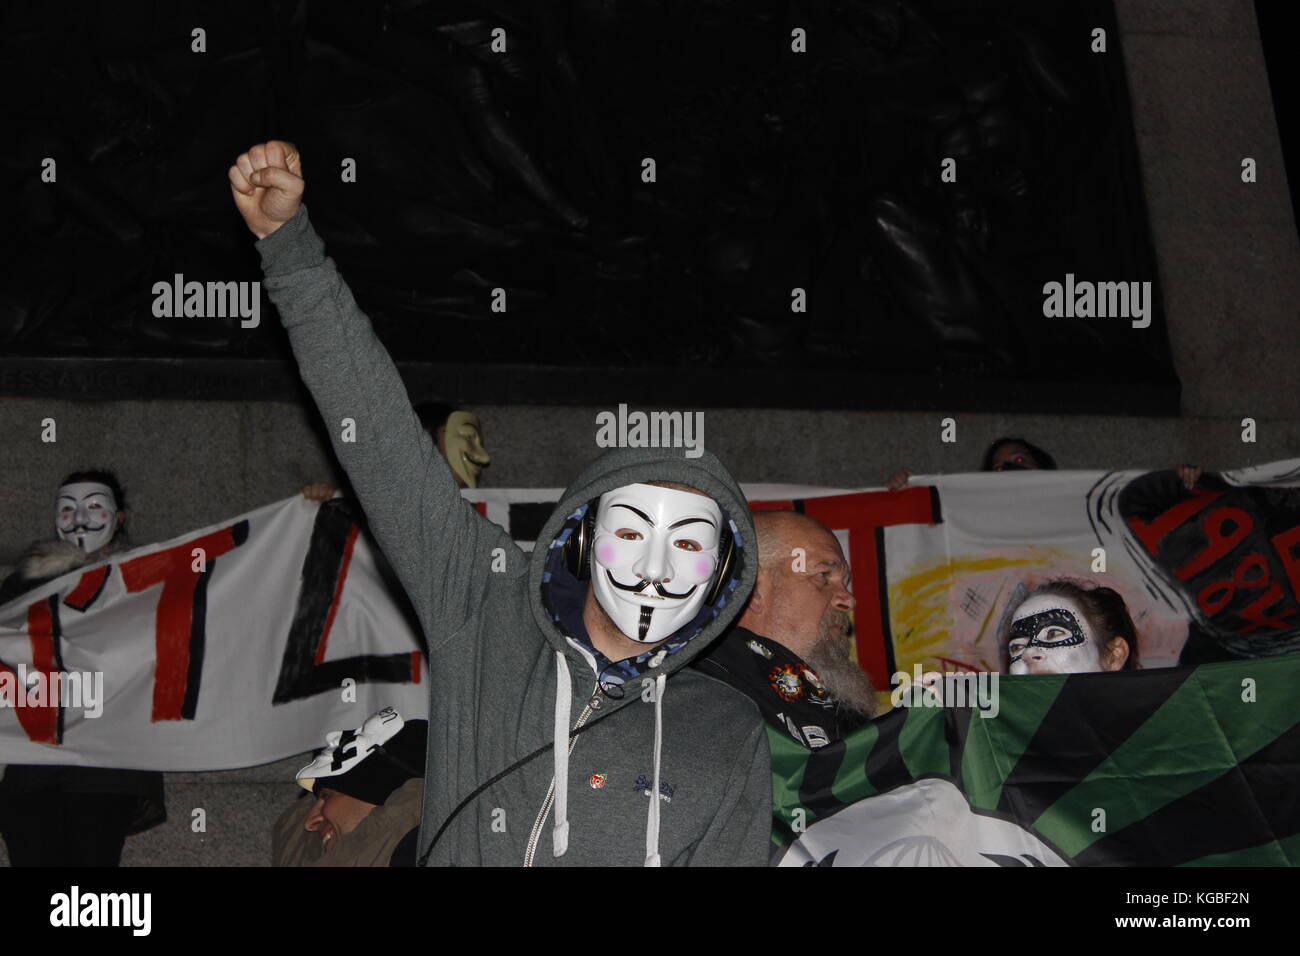 Londres, Royaume-Uni. 5Th nov, 2017. millions mars masque le centre de Londres, Royaume-Uni. crédit : manifestant anonyme alex cavendish/Alamy live news Banque D'Images